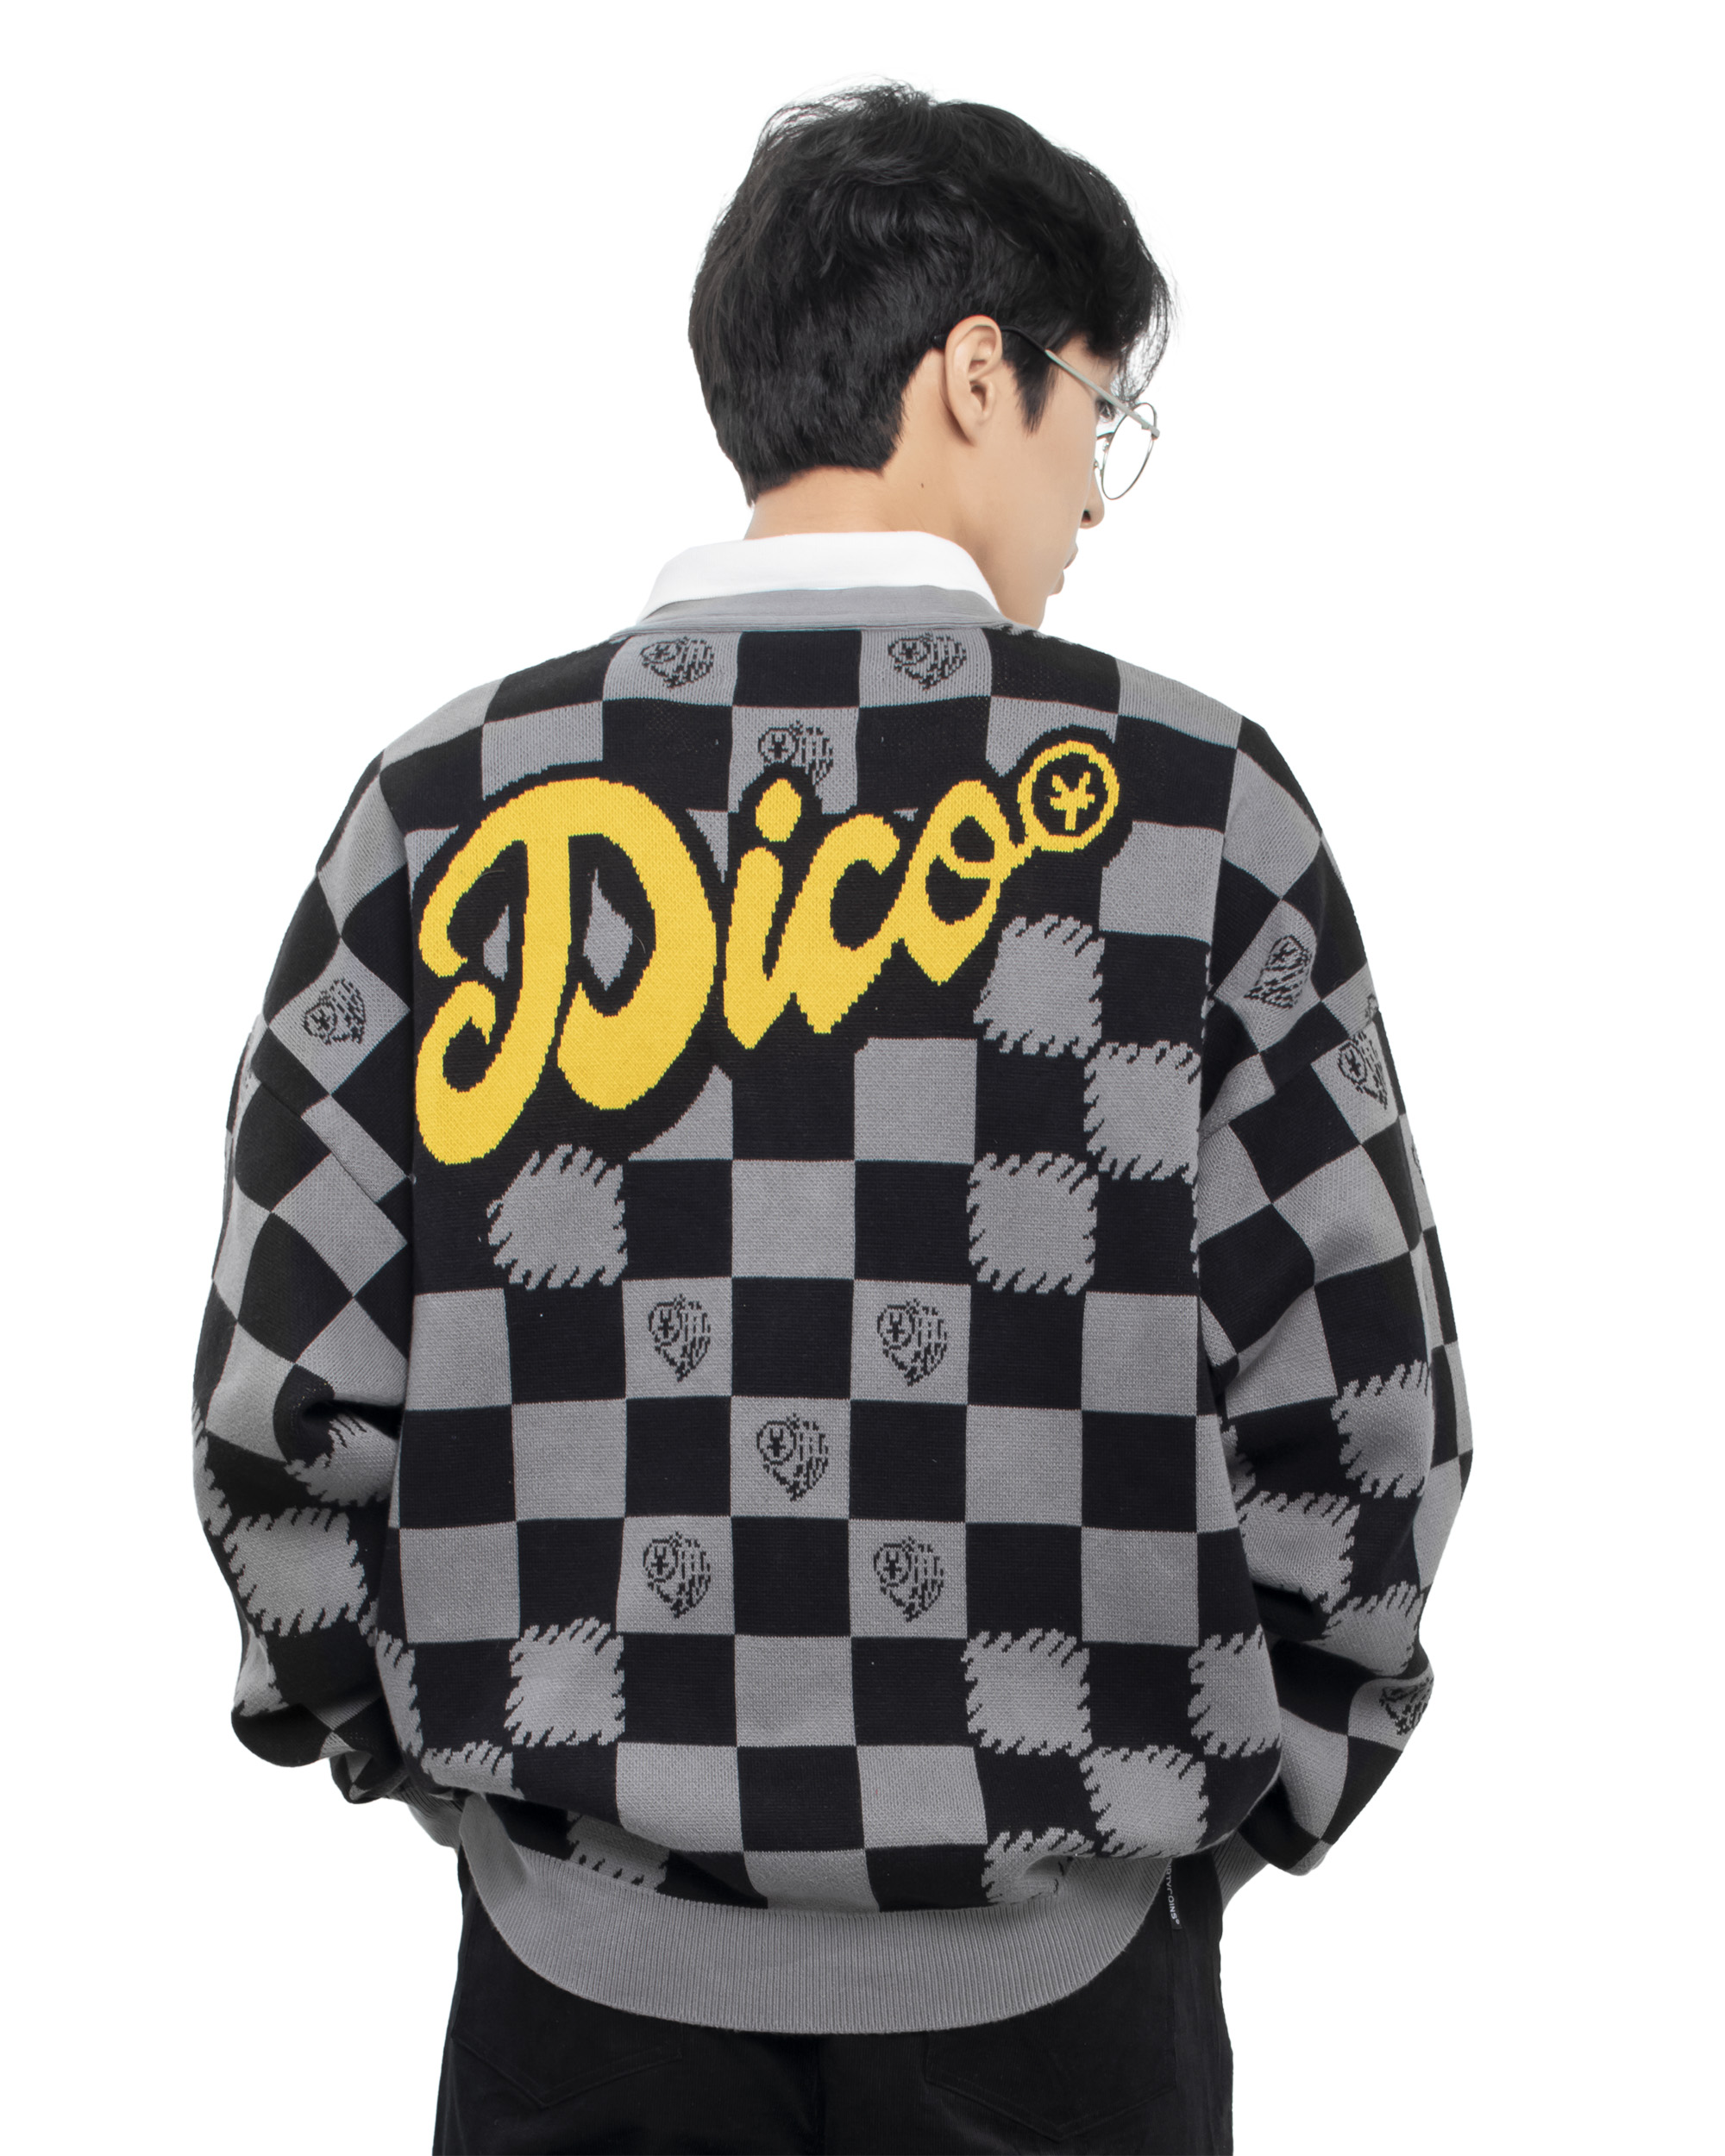 Dico Checkerboard Knit Cardigan - Grey